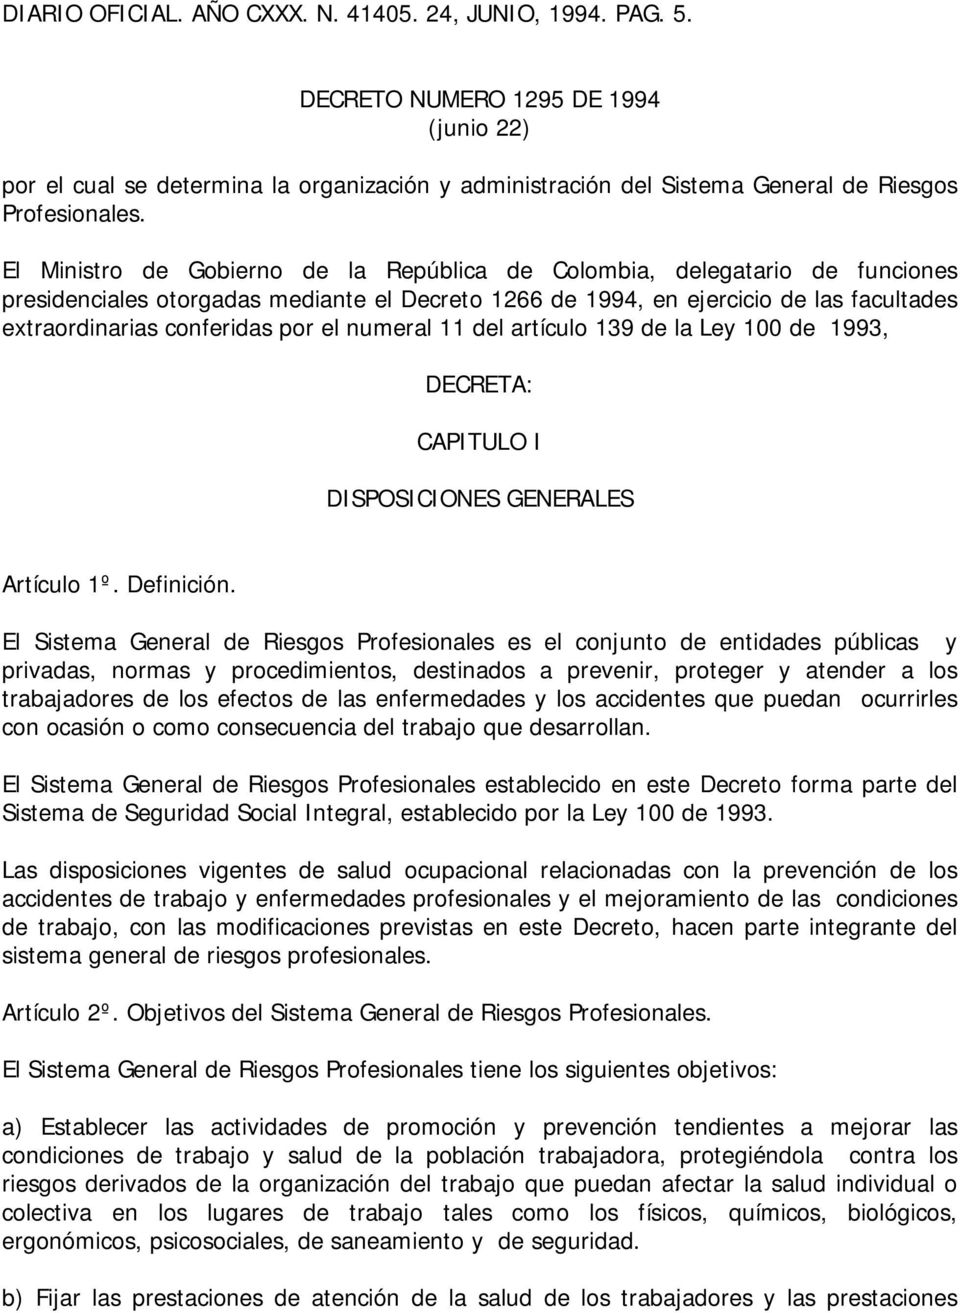 El Ministro de Gobierno de la República de Colombia, delegatario de funciones presidenciales otorgadas mediante el Decreto 1266 de 1994, en ejercicio de las facultades extraordinarias conferidas por